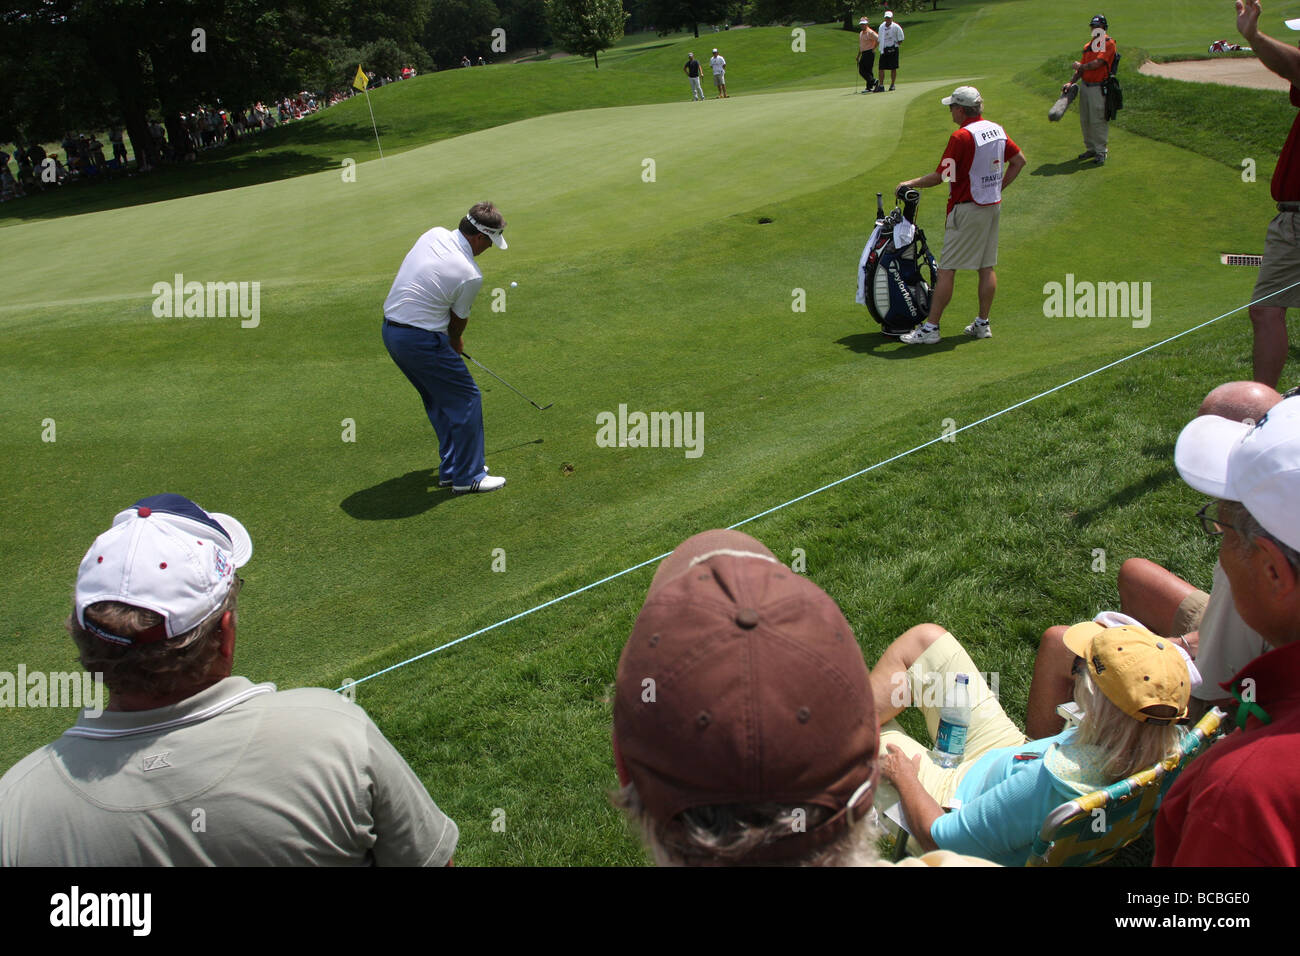 Fans watch un golfeur pro voyageurs pendant le tournoi de golf de championnat à Cromwell CT USA Banque D'Images